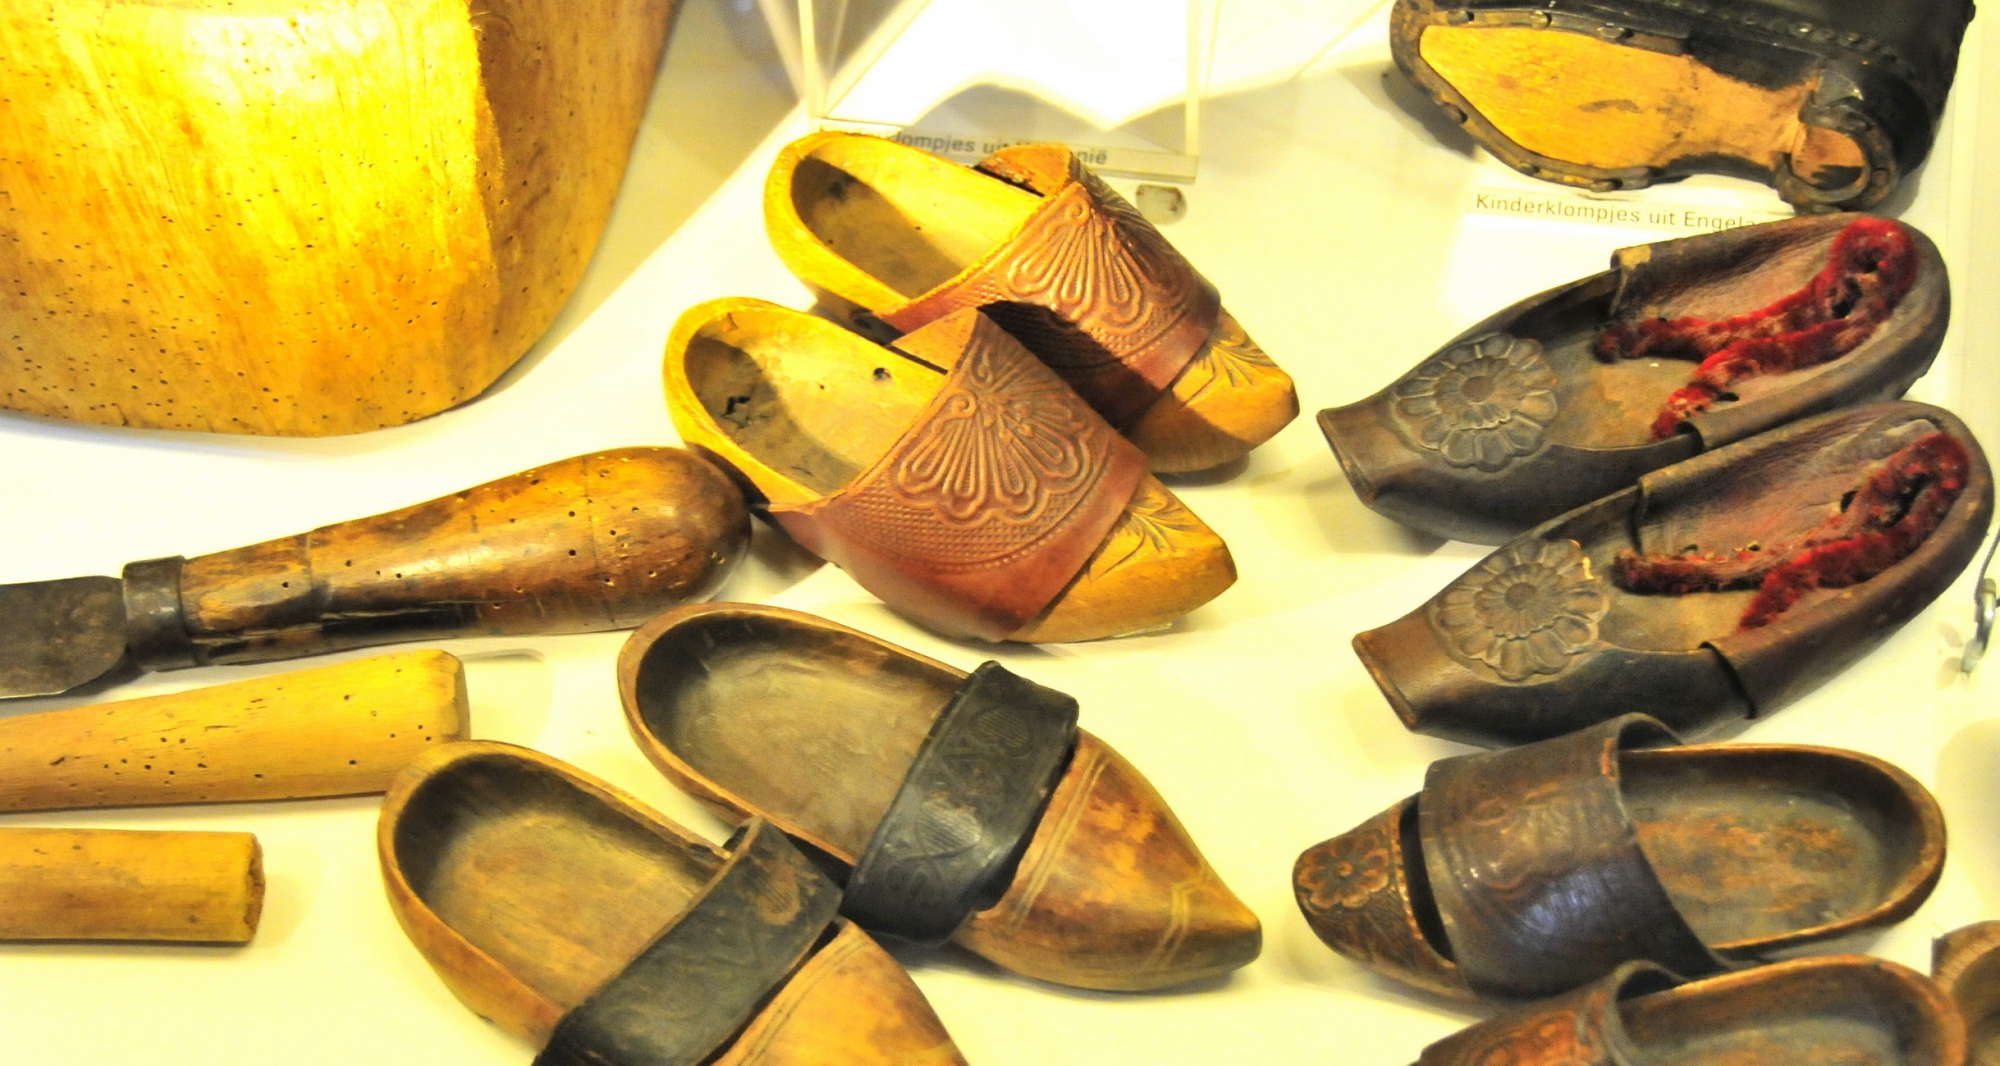 Chuyện về đôi giày gỗ clog nổi tiếng ở hà lan